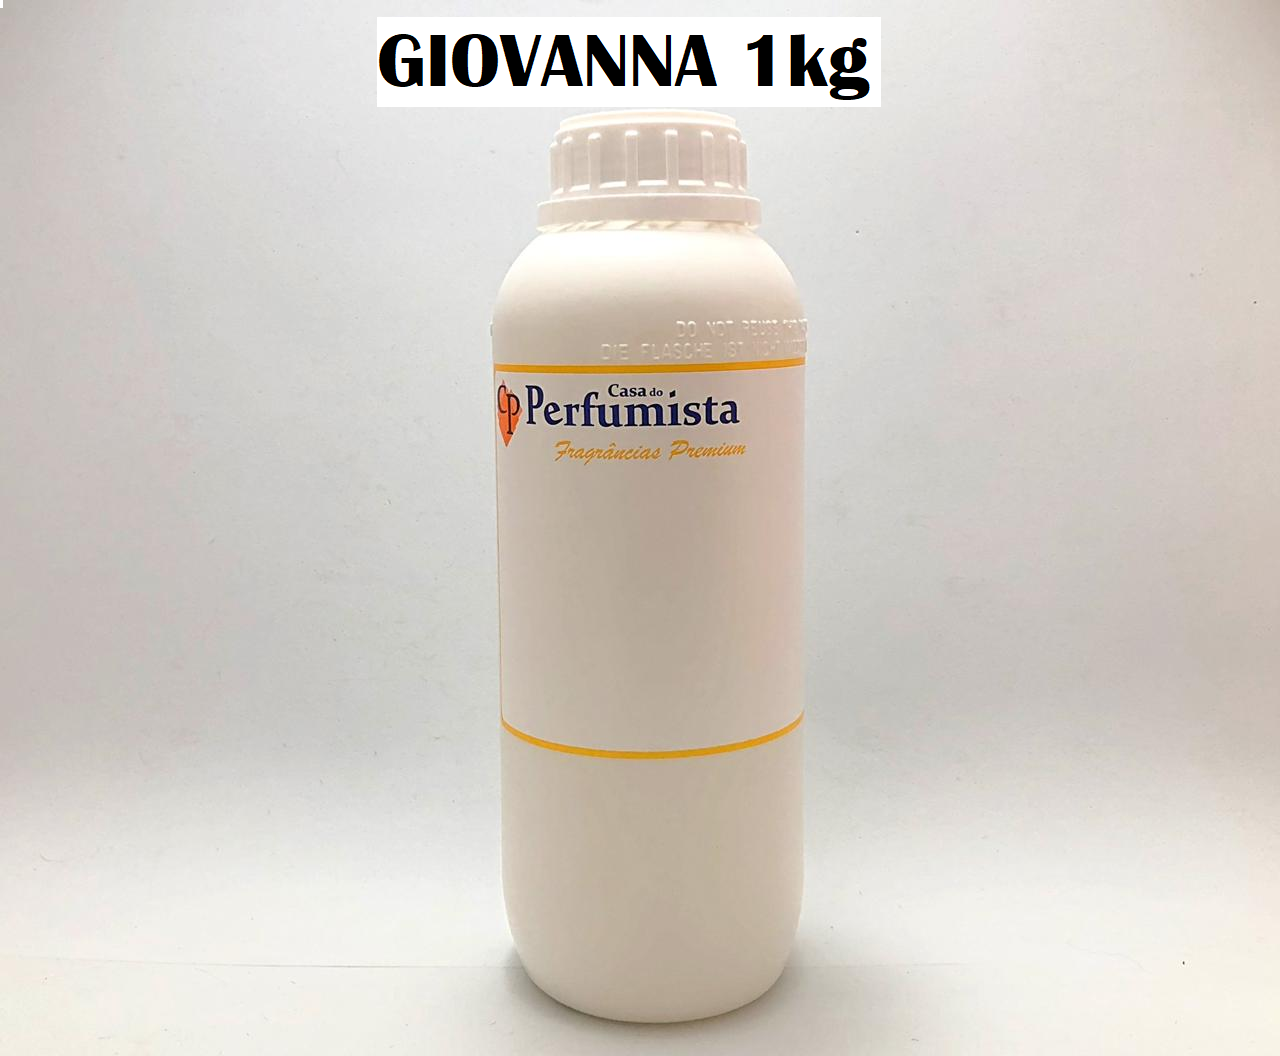 GIOVANNA - 1kg